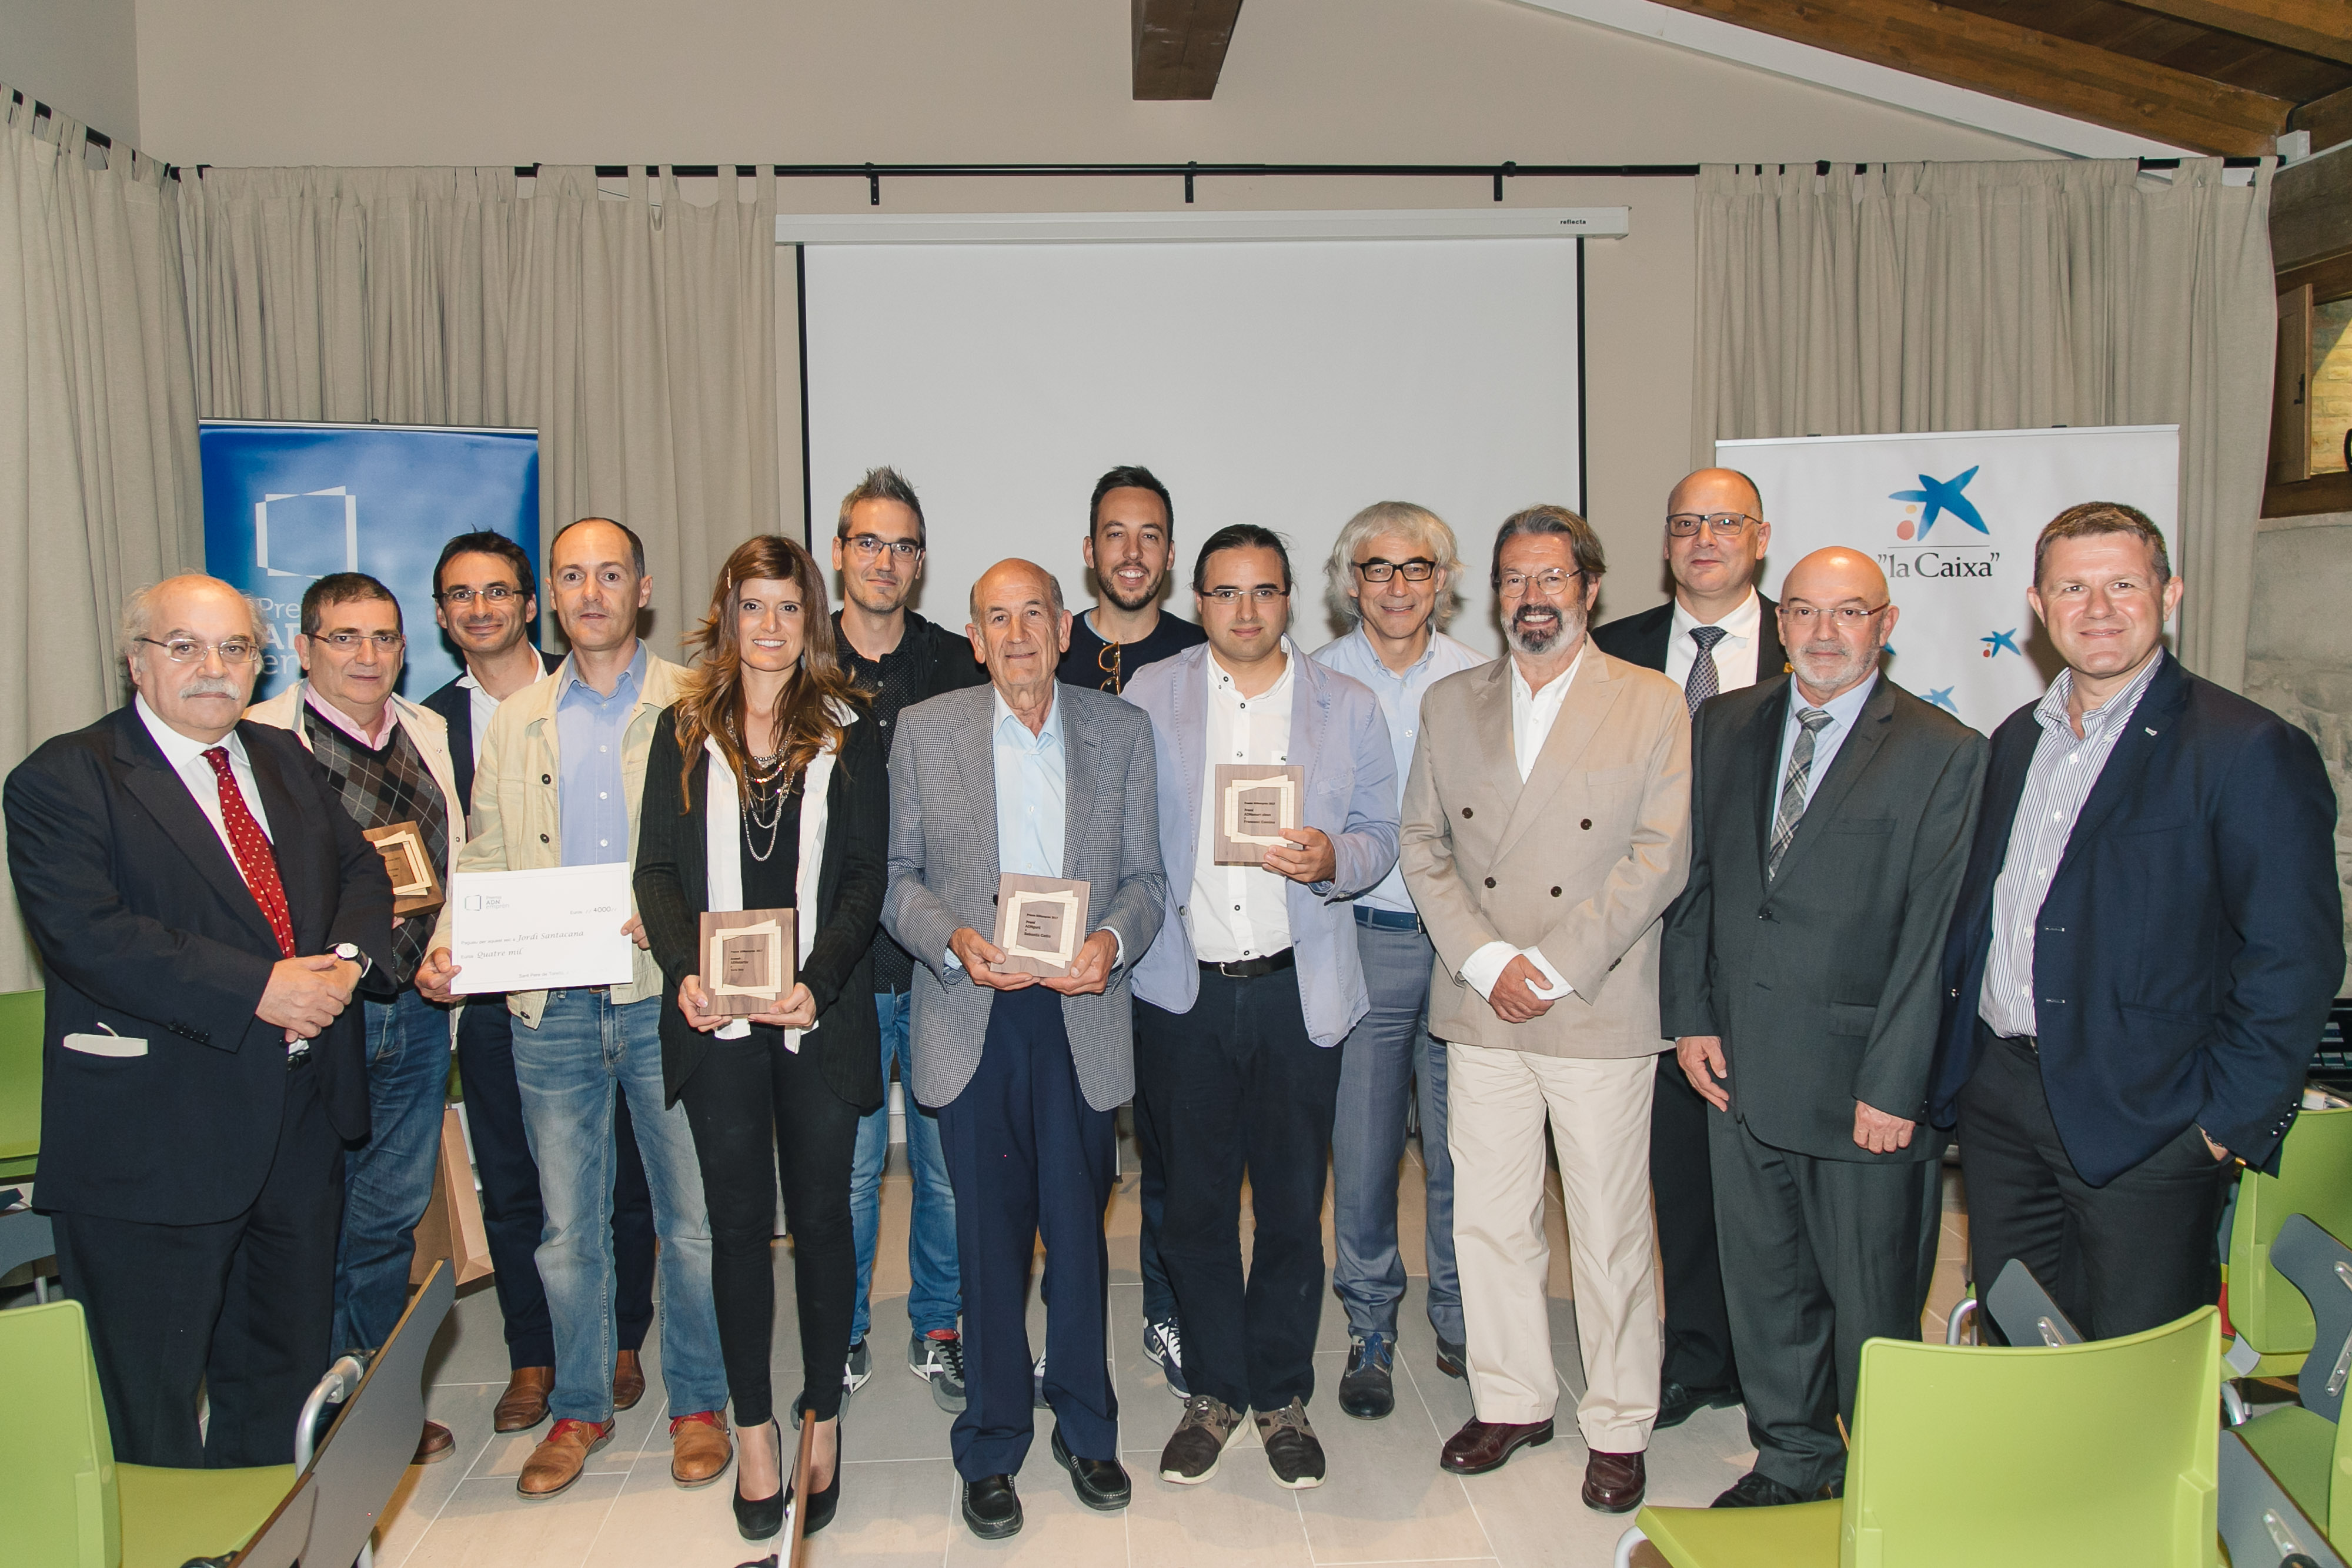 L'exconseller Mas-Colell amb els premiats i representants dels organitzadors